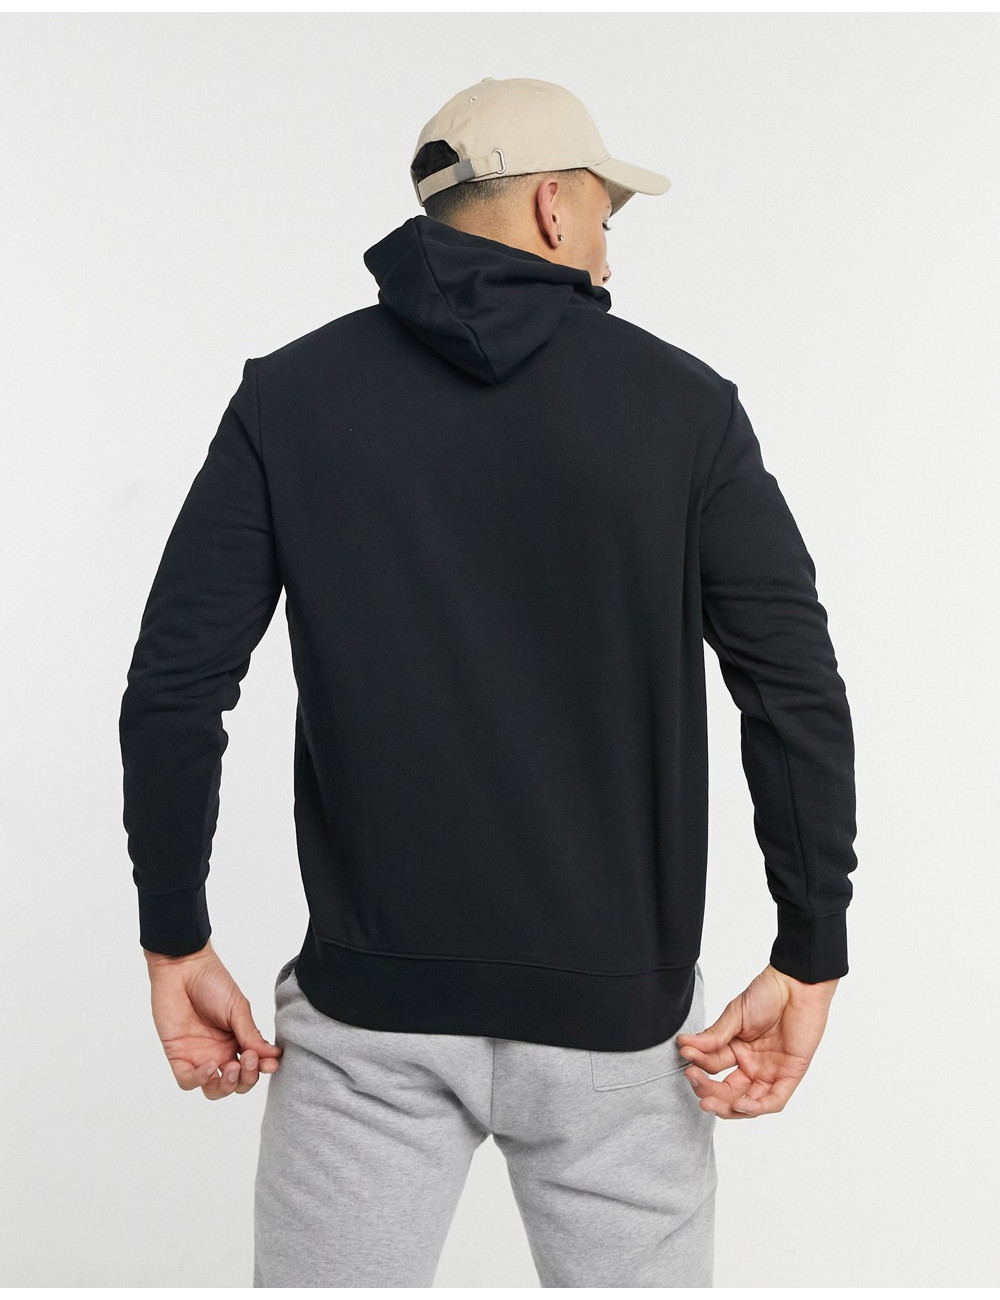 Lee graphic hoodie in black